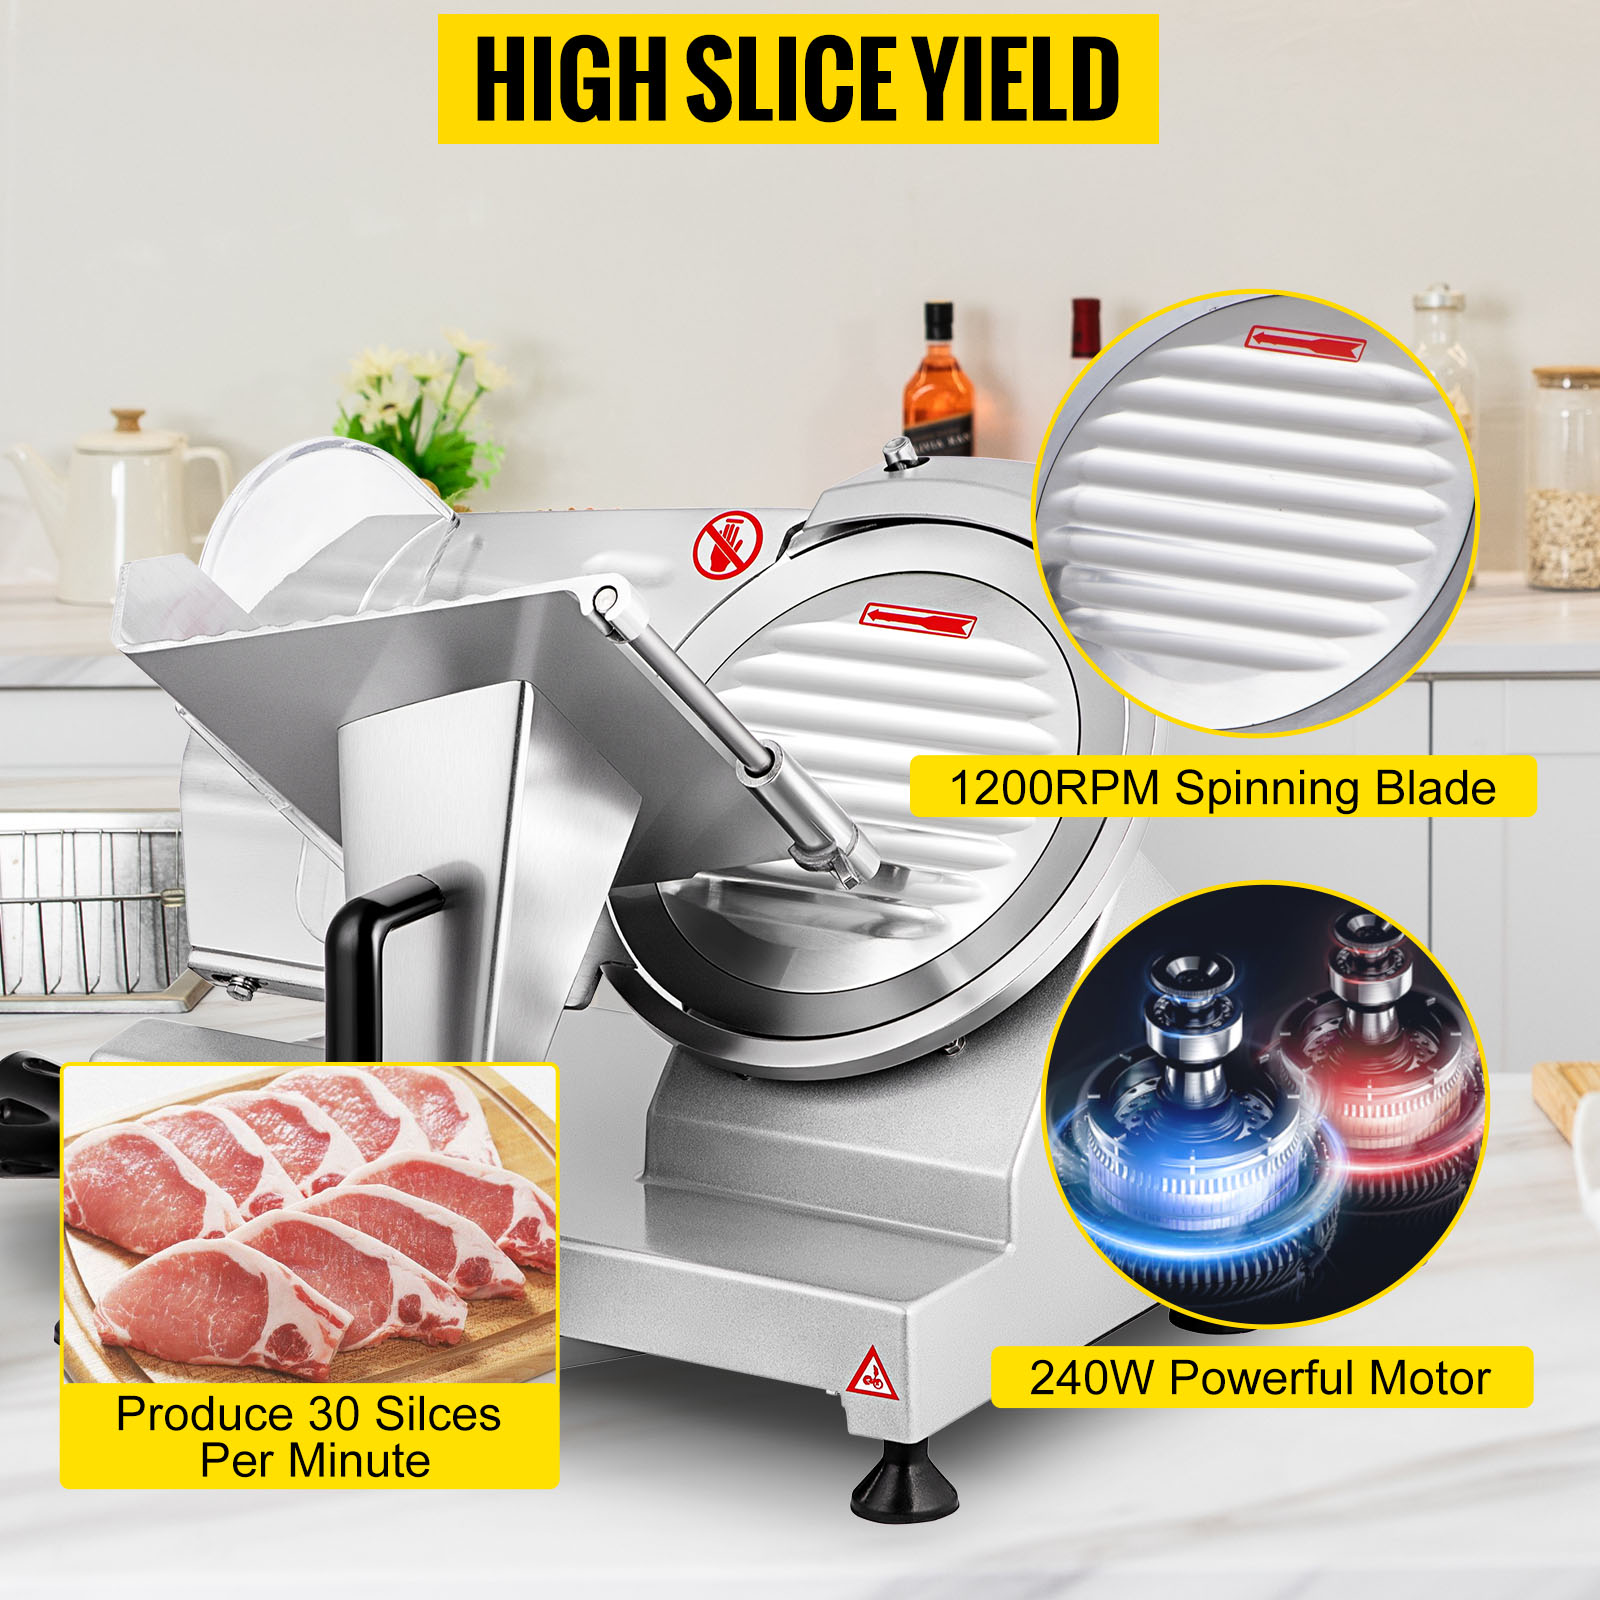 VEVOR Silver Commercial Meat Slicer Electric Deli Food Slicer 1200 RPM Meat  Slicer with 8 in. Steel Blade YCB8240W8110V4GL4V1 - The Home Depot